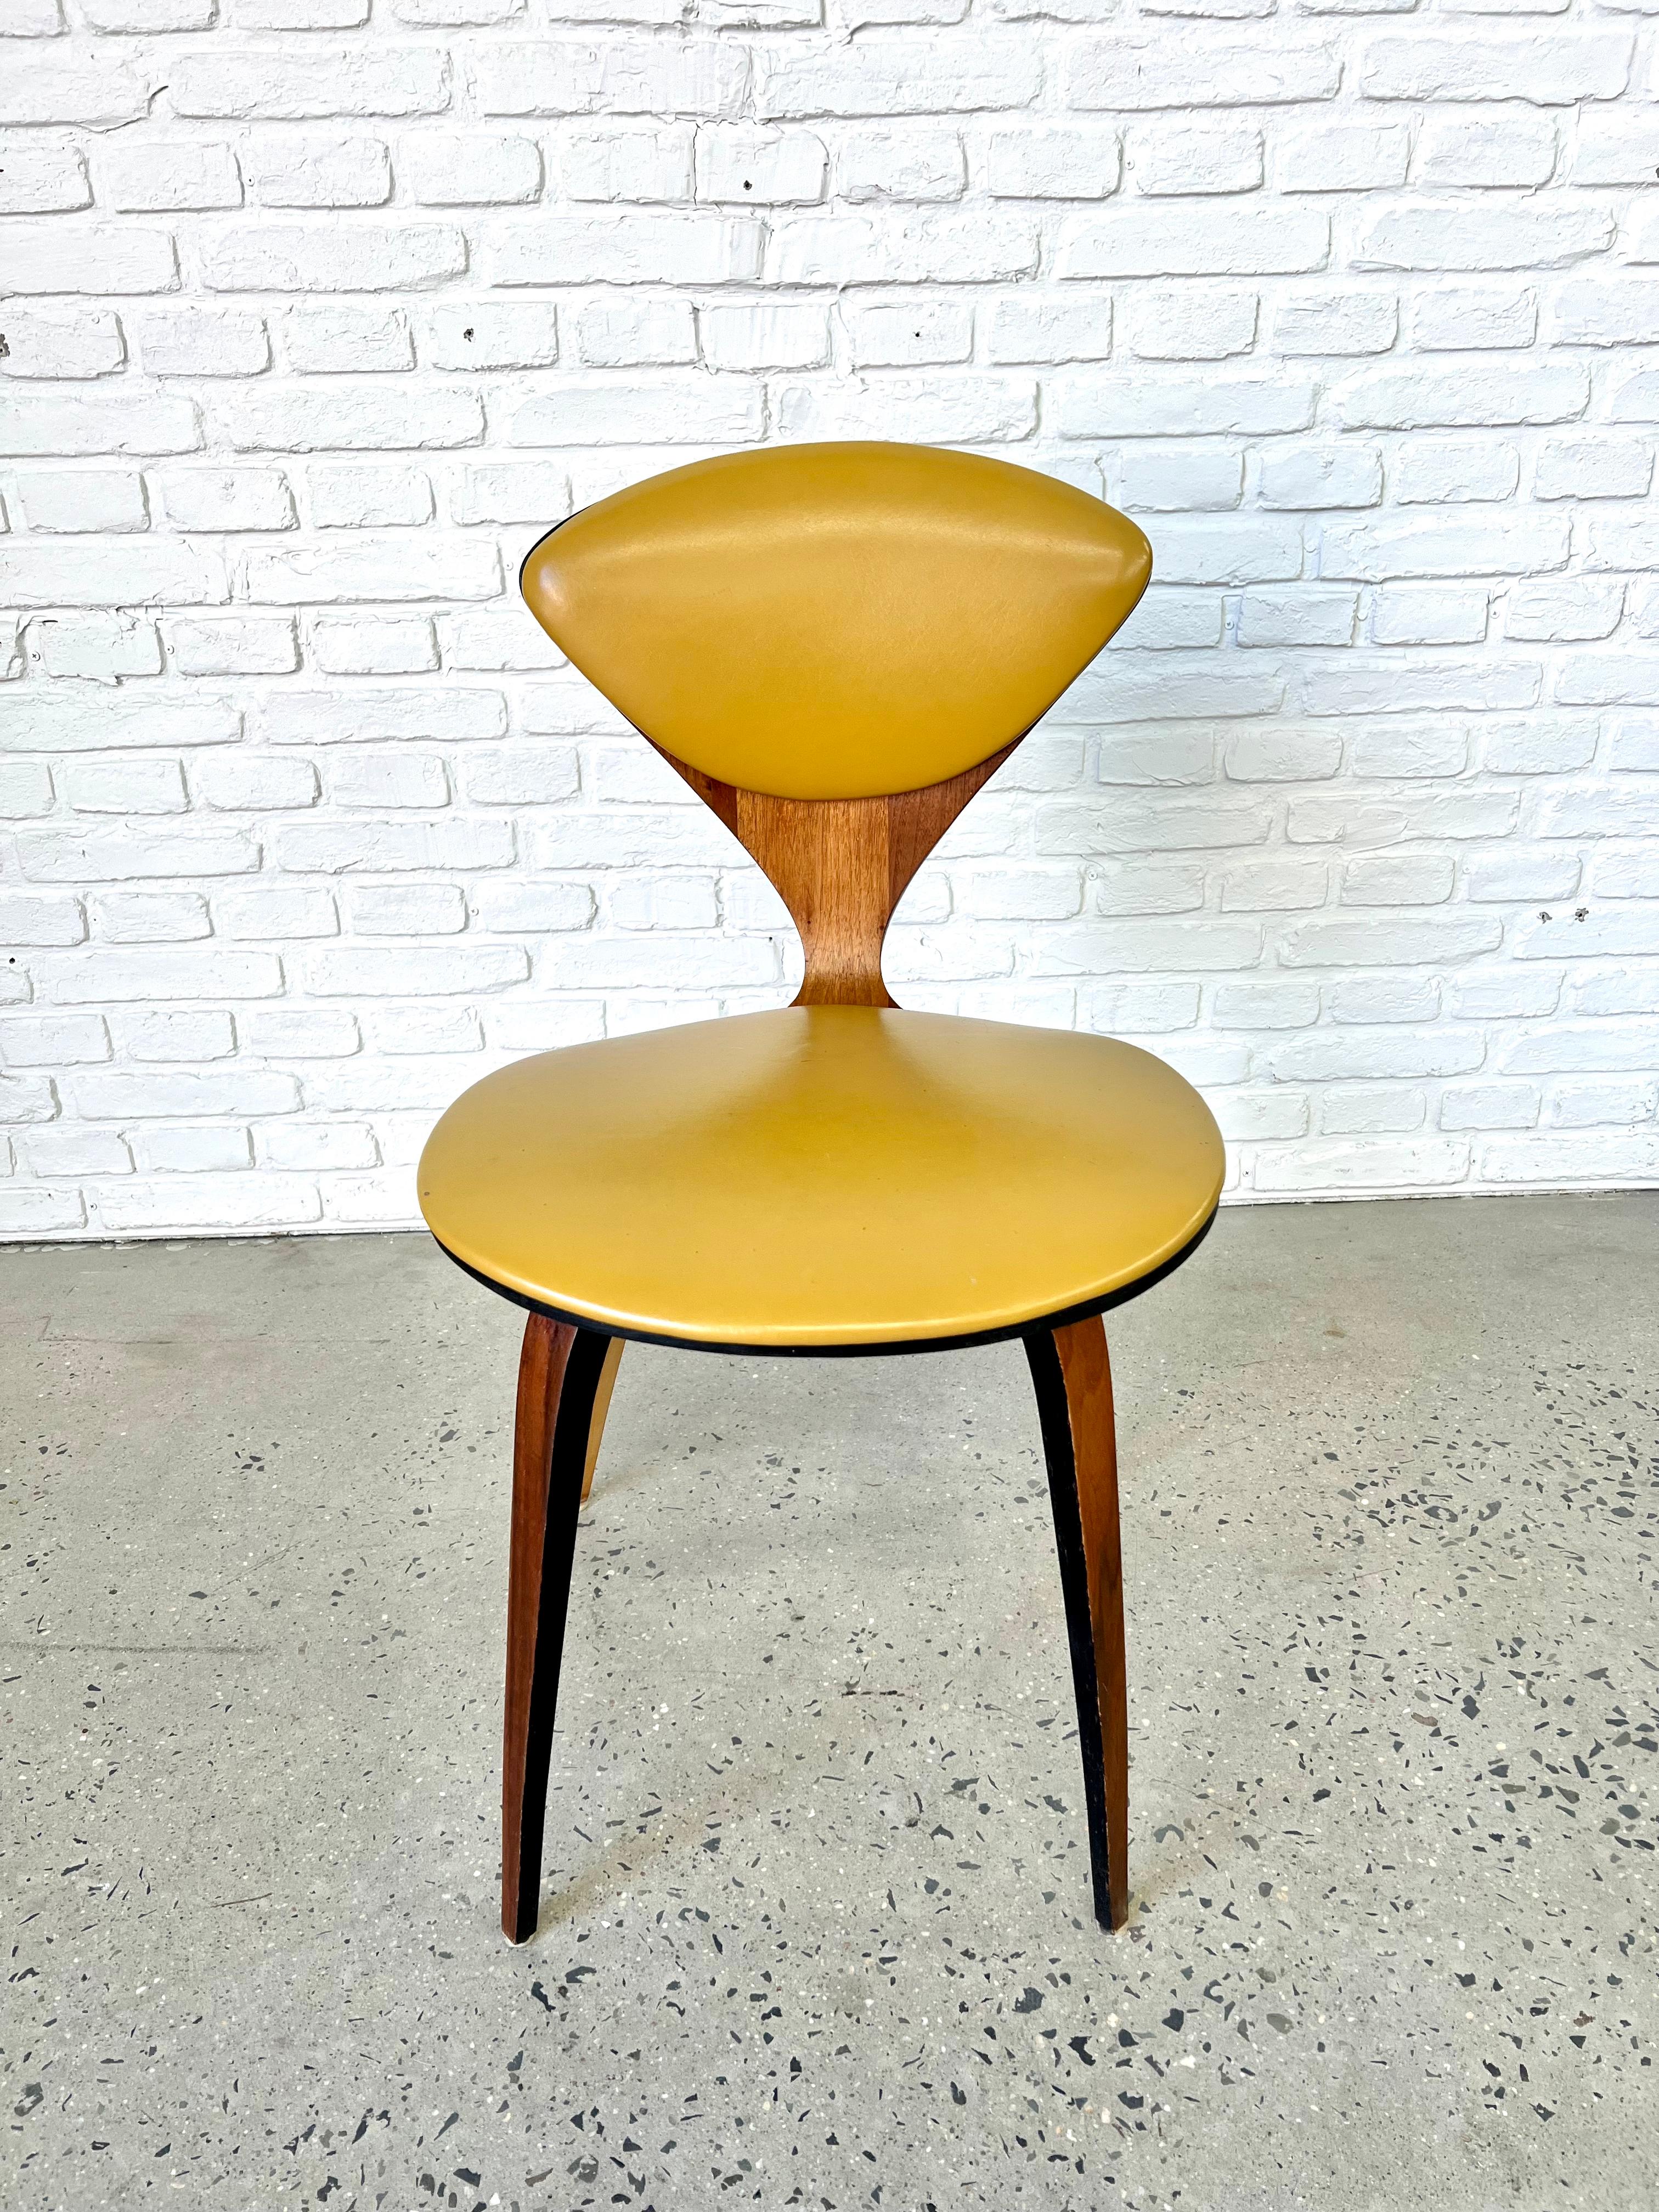 Chaise en contreplaqué courbé avec coussin en vinyle jaune (Naugahyde) datant des années 1960 et réalisée par le designer Norman Cherner pour Plycraft.  À l'origine, cette chaise aurait été utilisée comme chaise de salle à manger dans un ensemble,